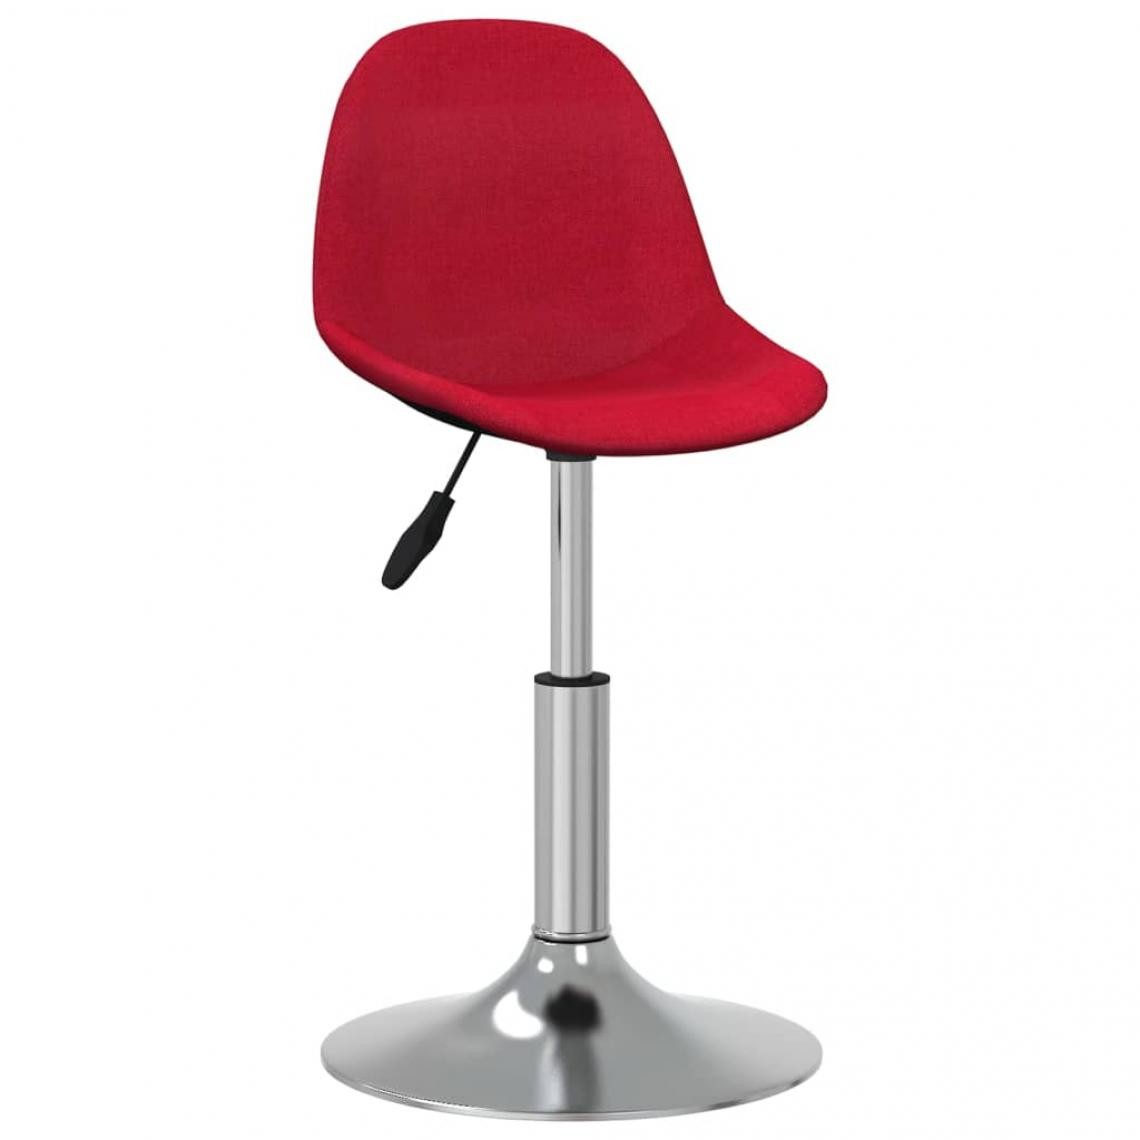 Vidaxl - vidaXL Chaise de salle à manger Rouge bordeaux Tissu - Chaises